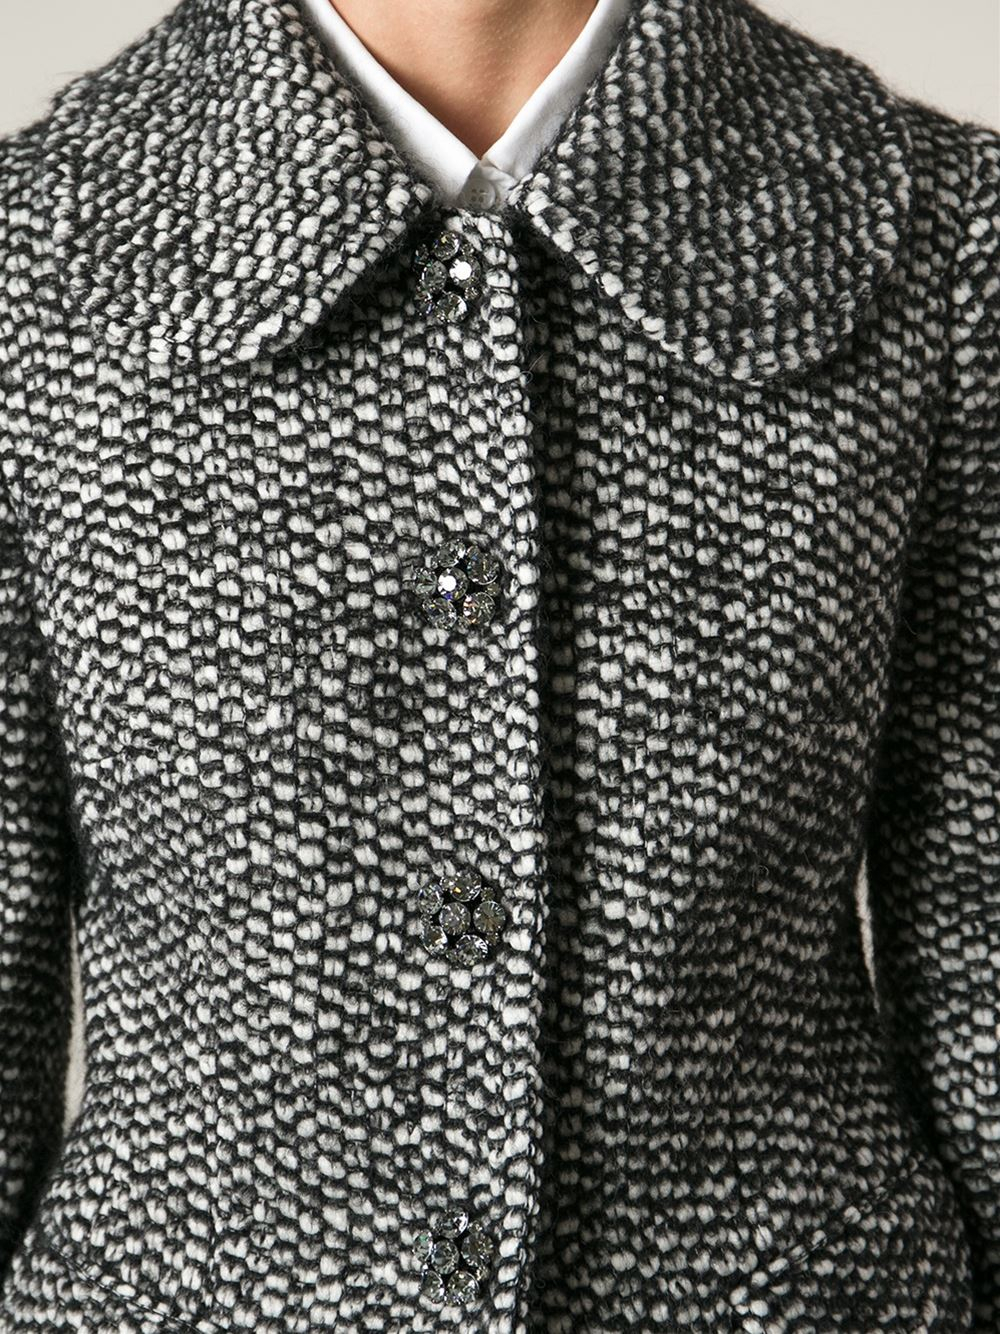 dolce gabbana tweed jacket